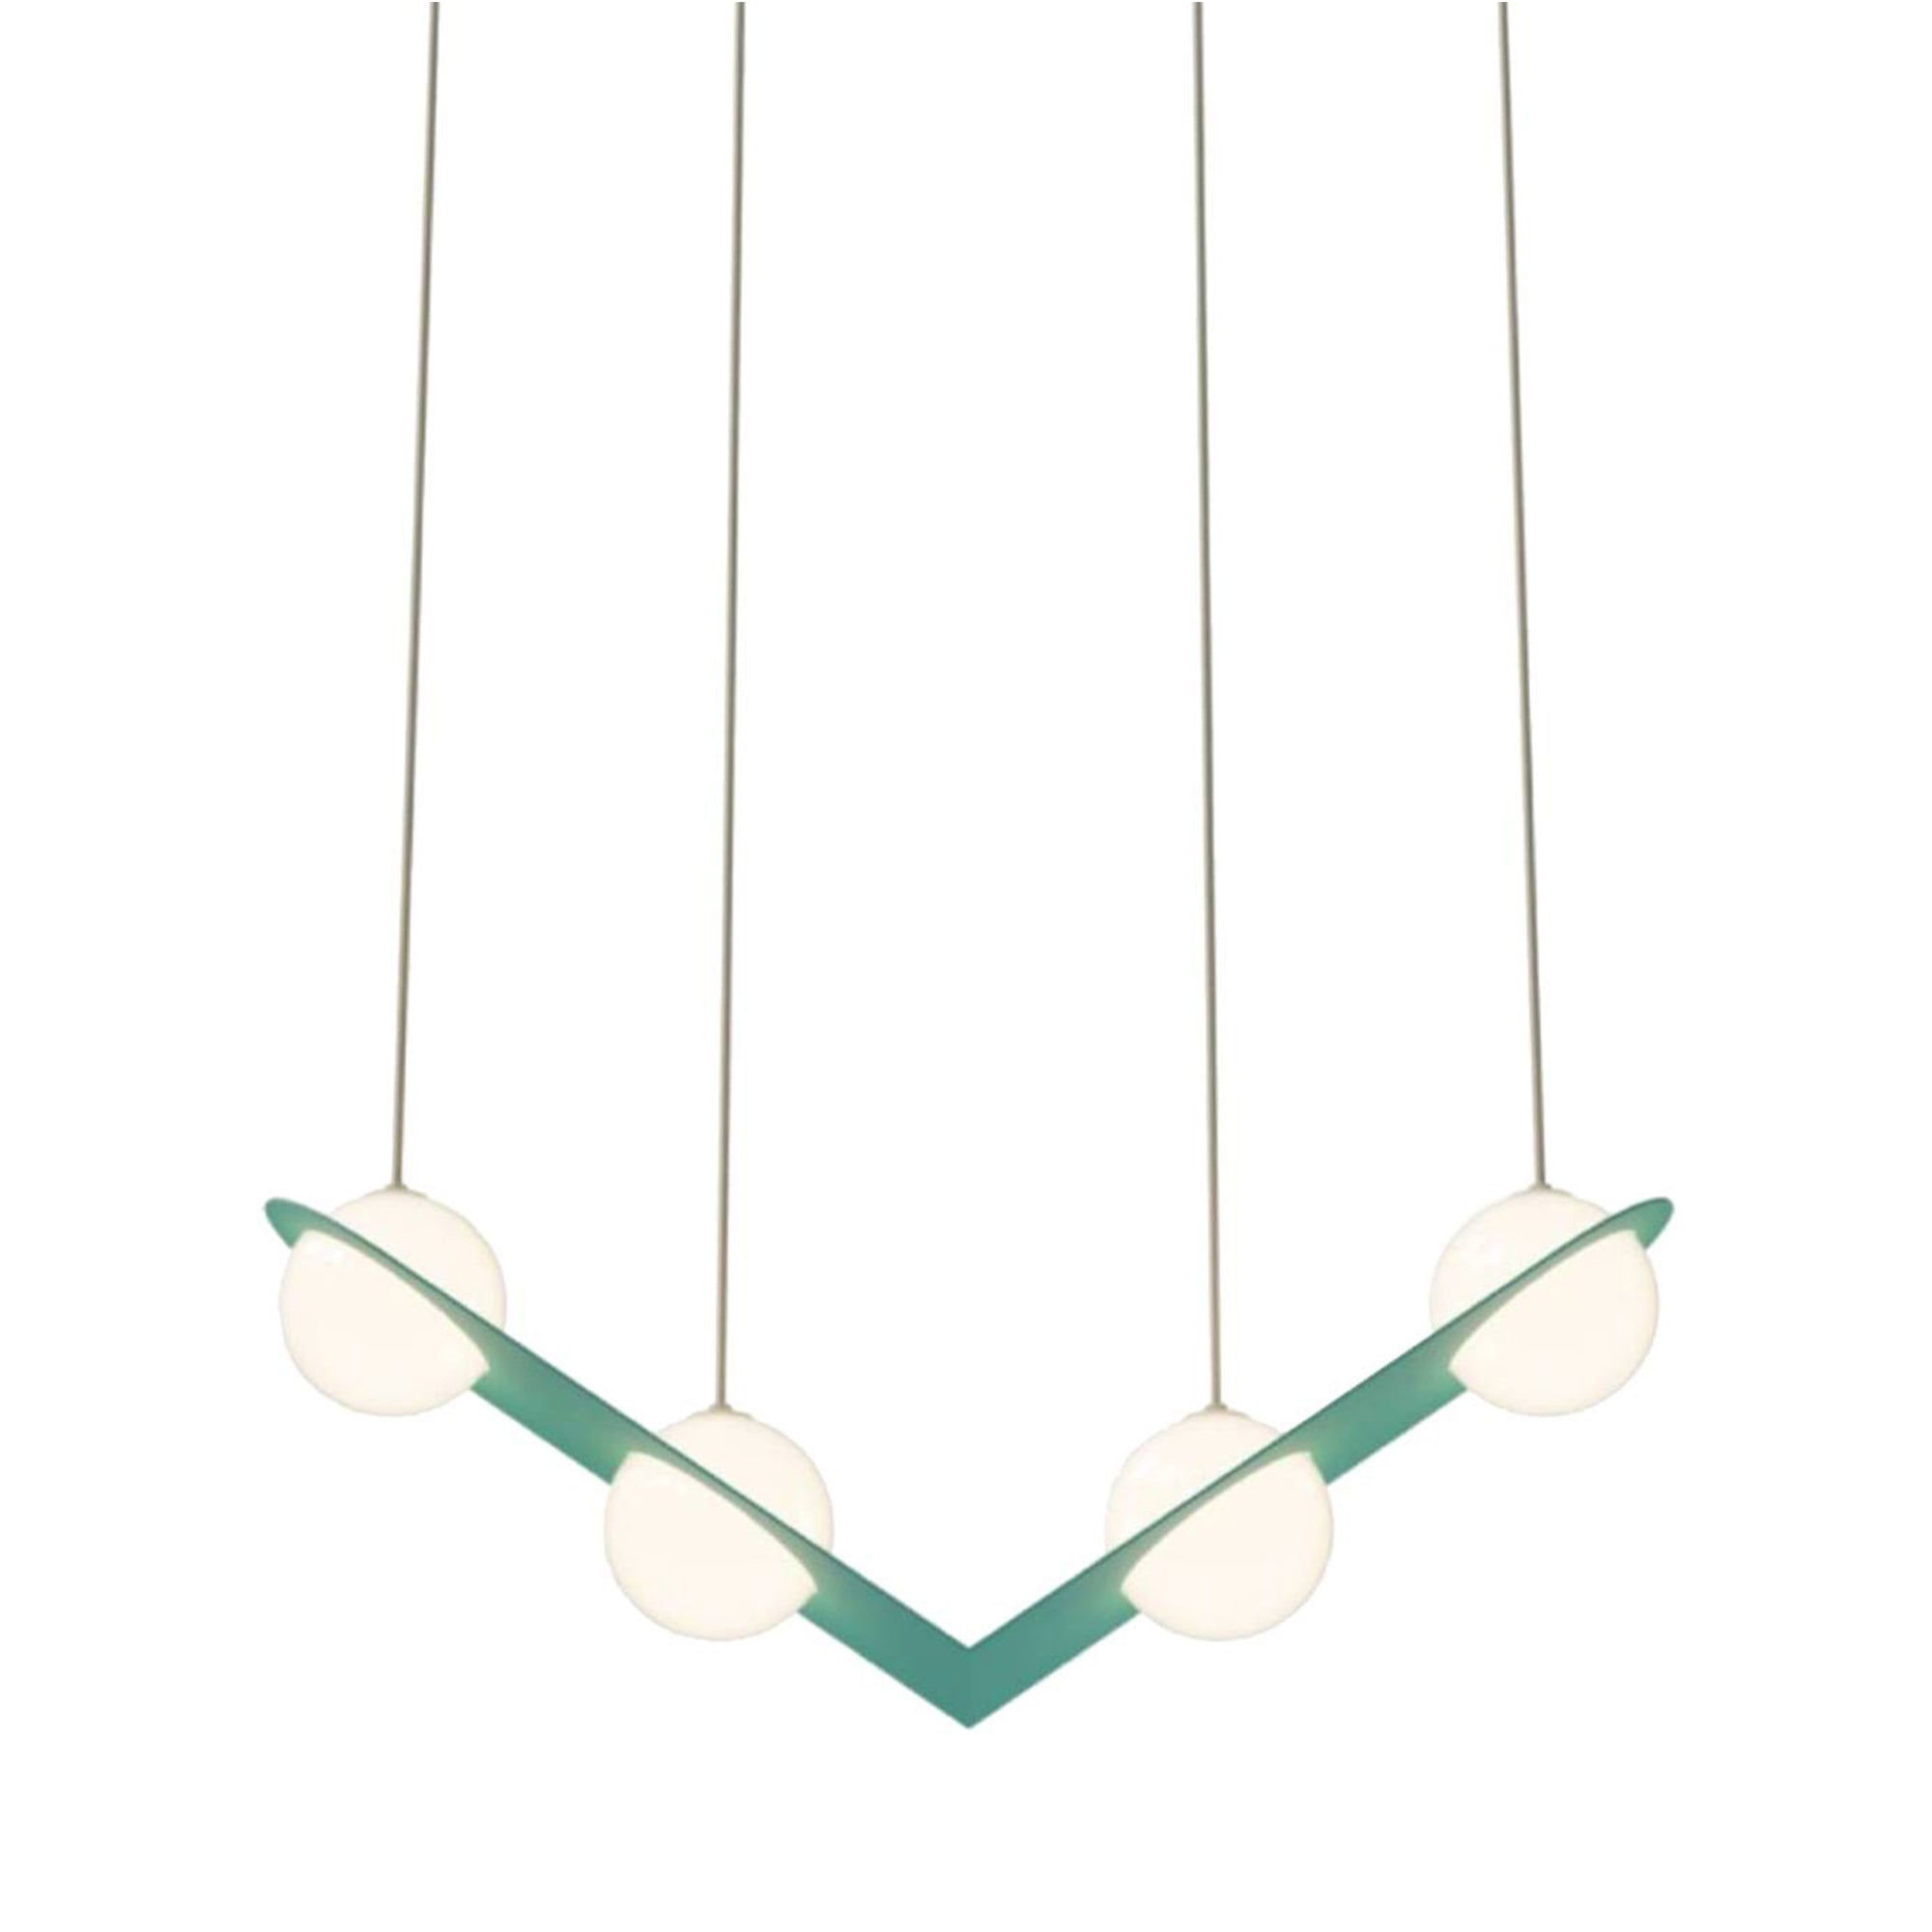 Laurent 02 Suspension Lamp: Turquoise + Beige